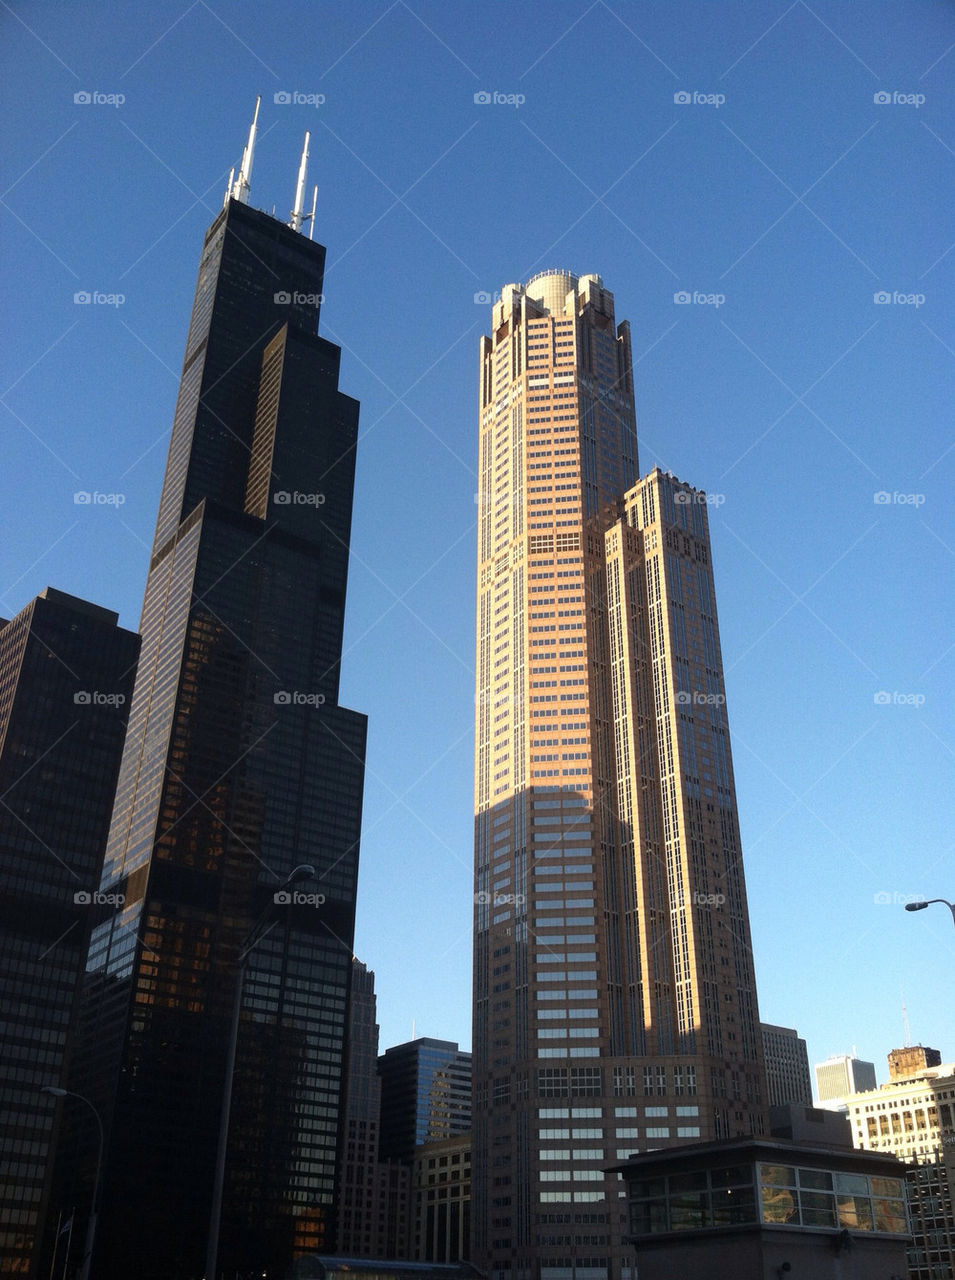 skyscraper tower scenic chicago by mwsop